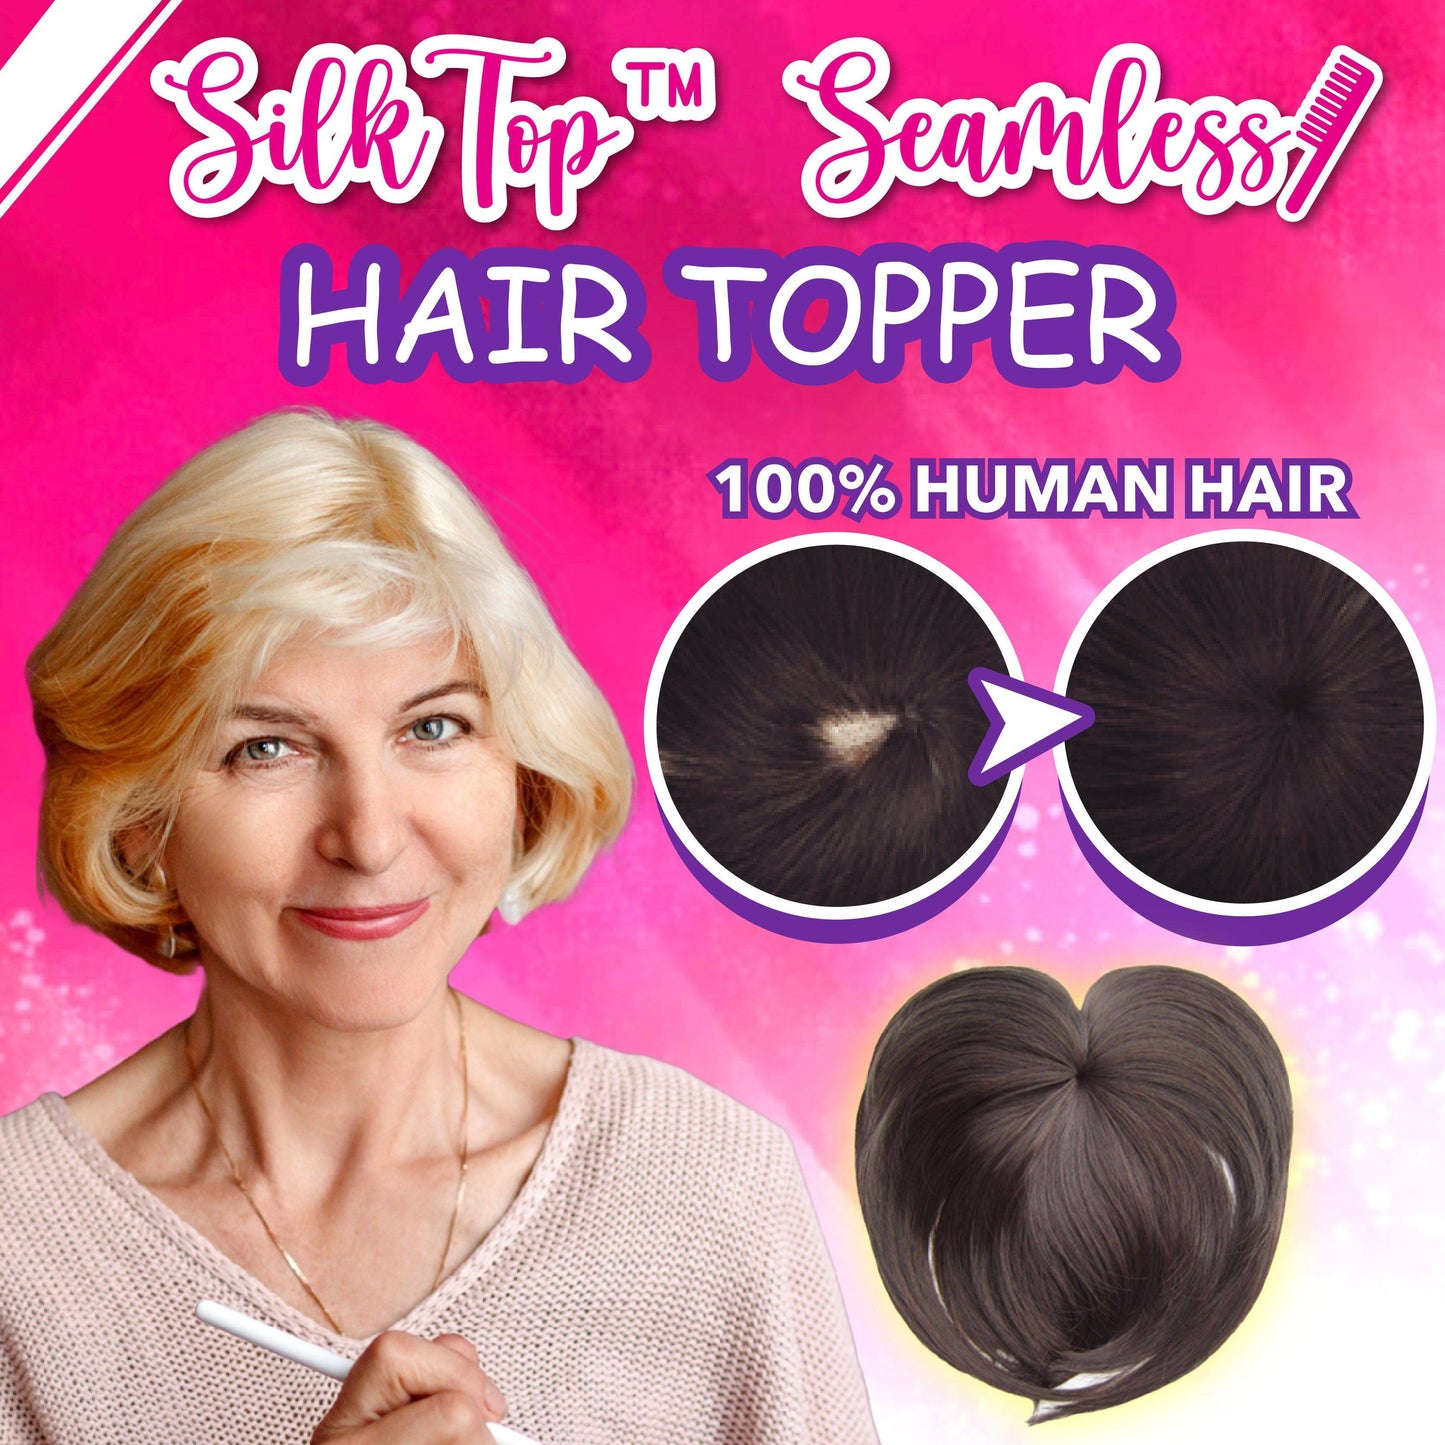 Seamless Hair Topper